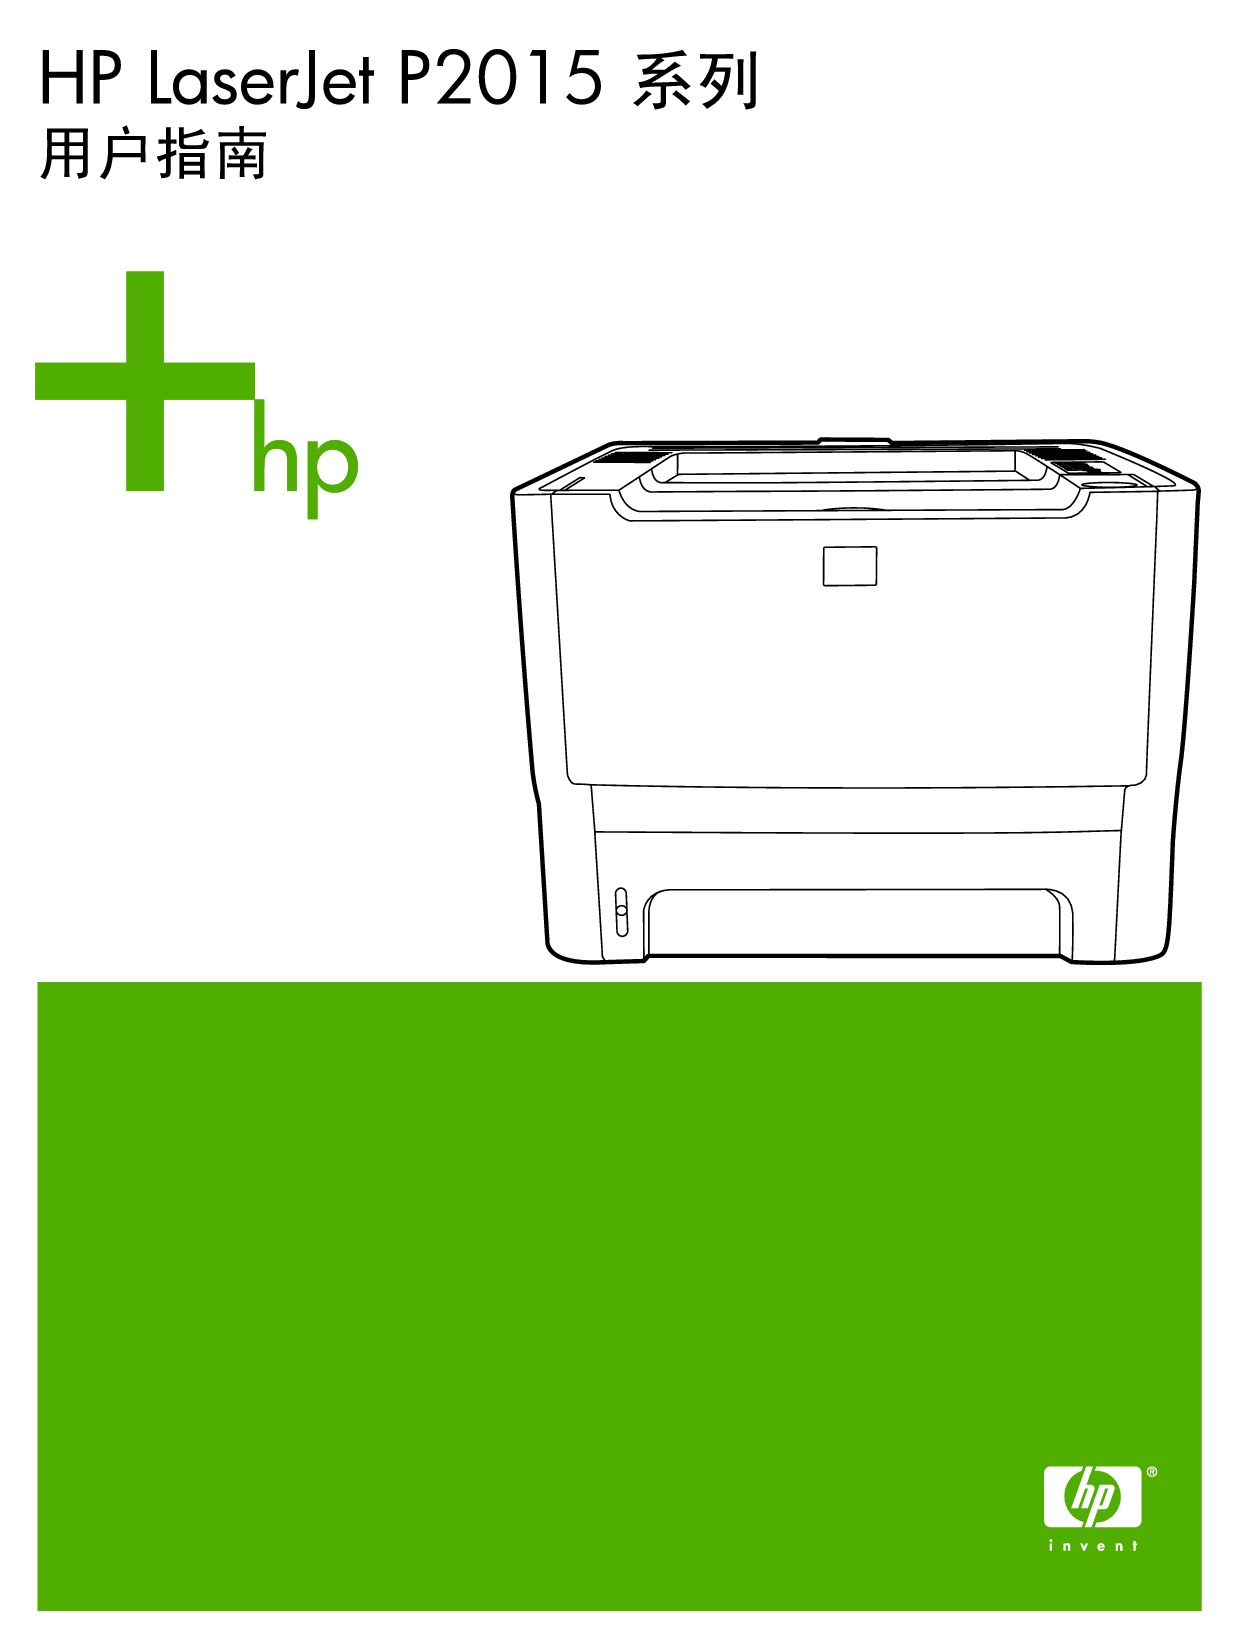 惠普 HP LaserJet P2015 用户指南 封面